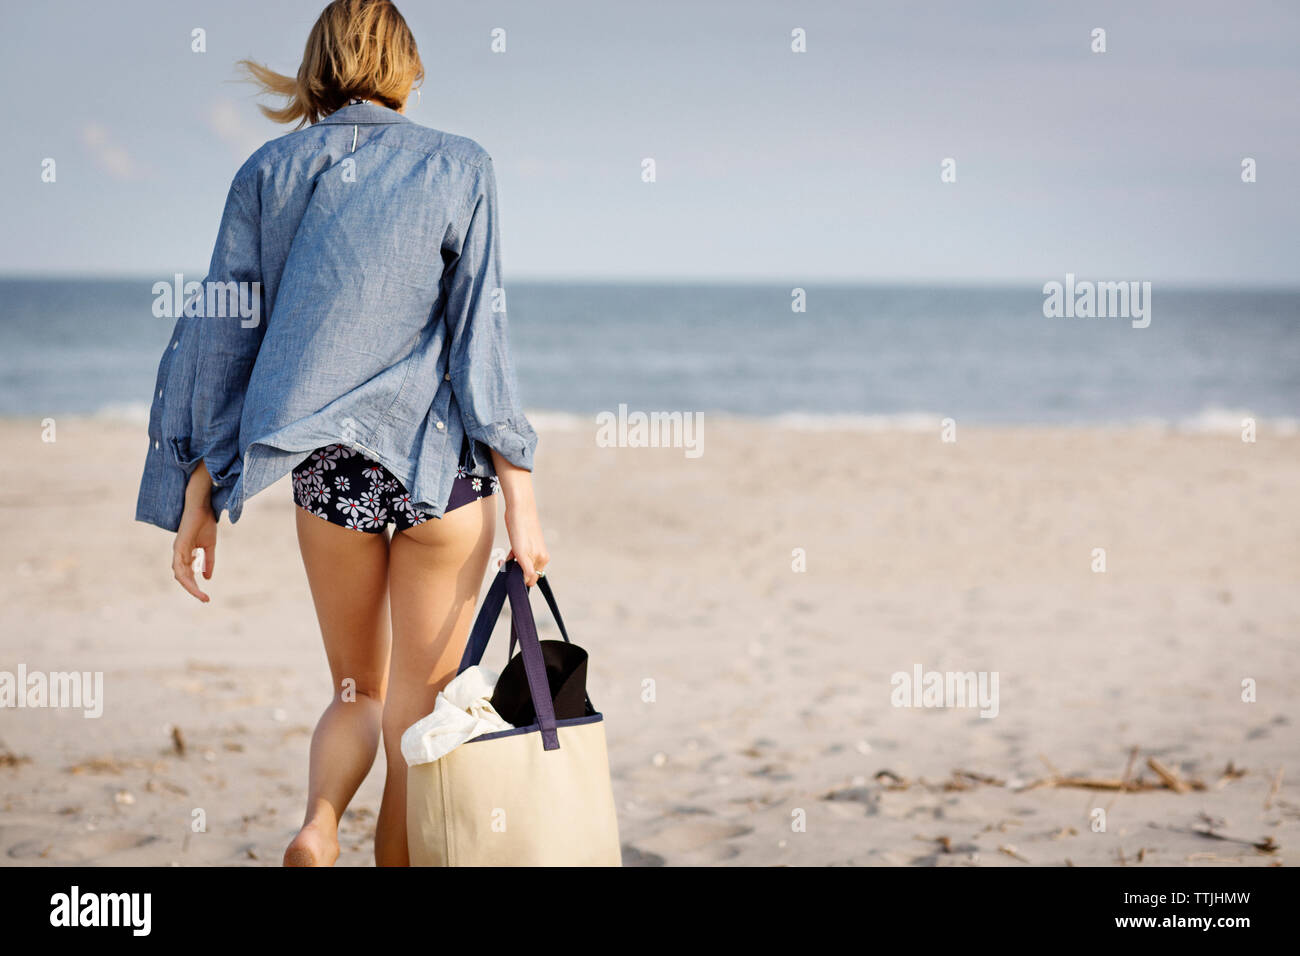 Vue arrière du woman walking on sand at beach Banque D'Images